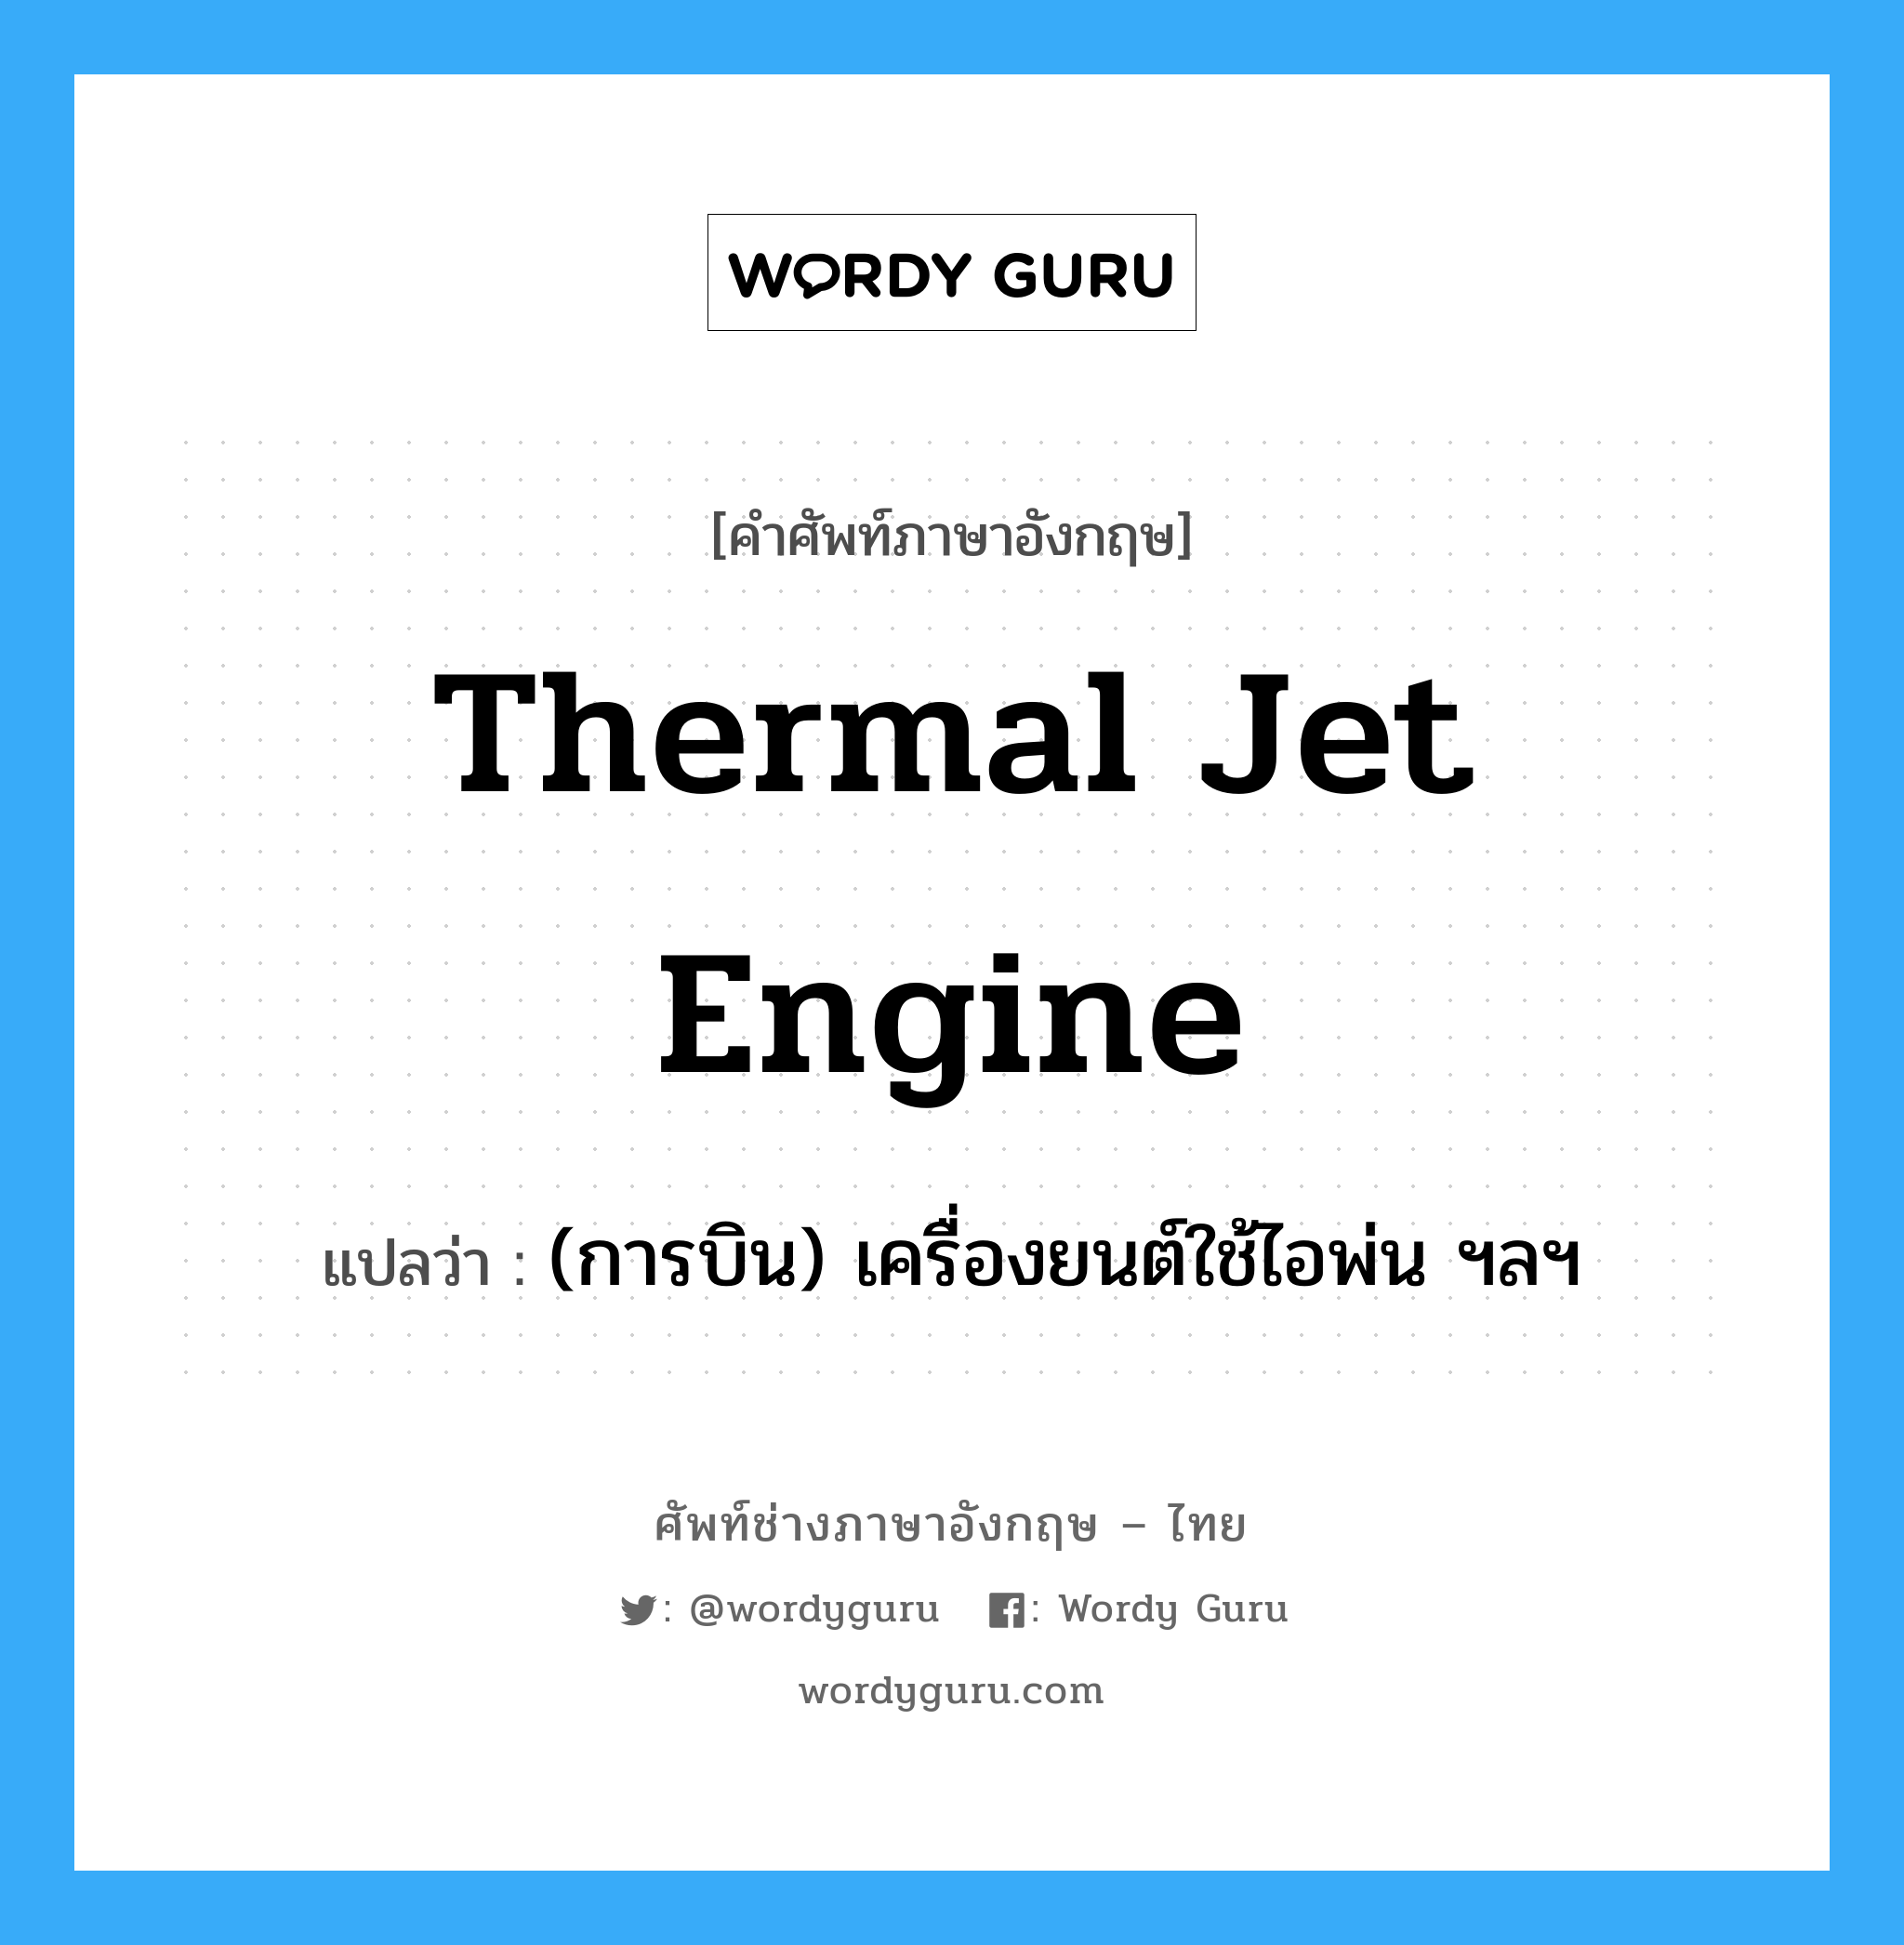 (การบิน) เครื่องยนต์ใช้ไอพ่น ฯลฯ ภาษาอังกฤษ?, คำศัพท์ช่างภาษาอังกฤษ - ไทย (การบิน) เครื่องยนต์ใช้ไอพ่น ฯลฯ คำศัพท์ภาษาอังกฤษ (การบิน) เครื่องยนต์ใช้ไอพ่น ฯลฯ แปลว่า thermal jet engine